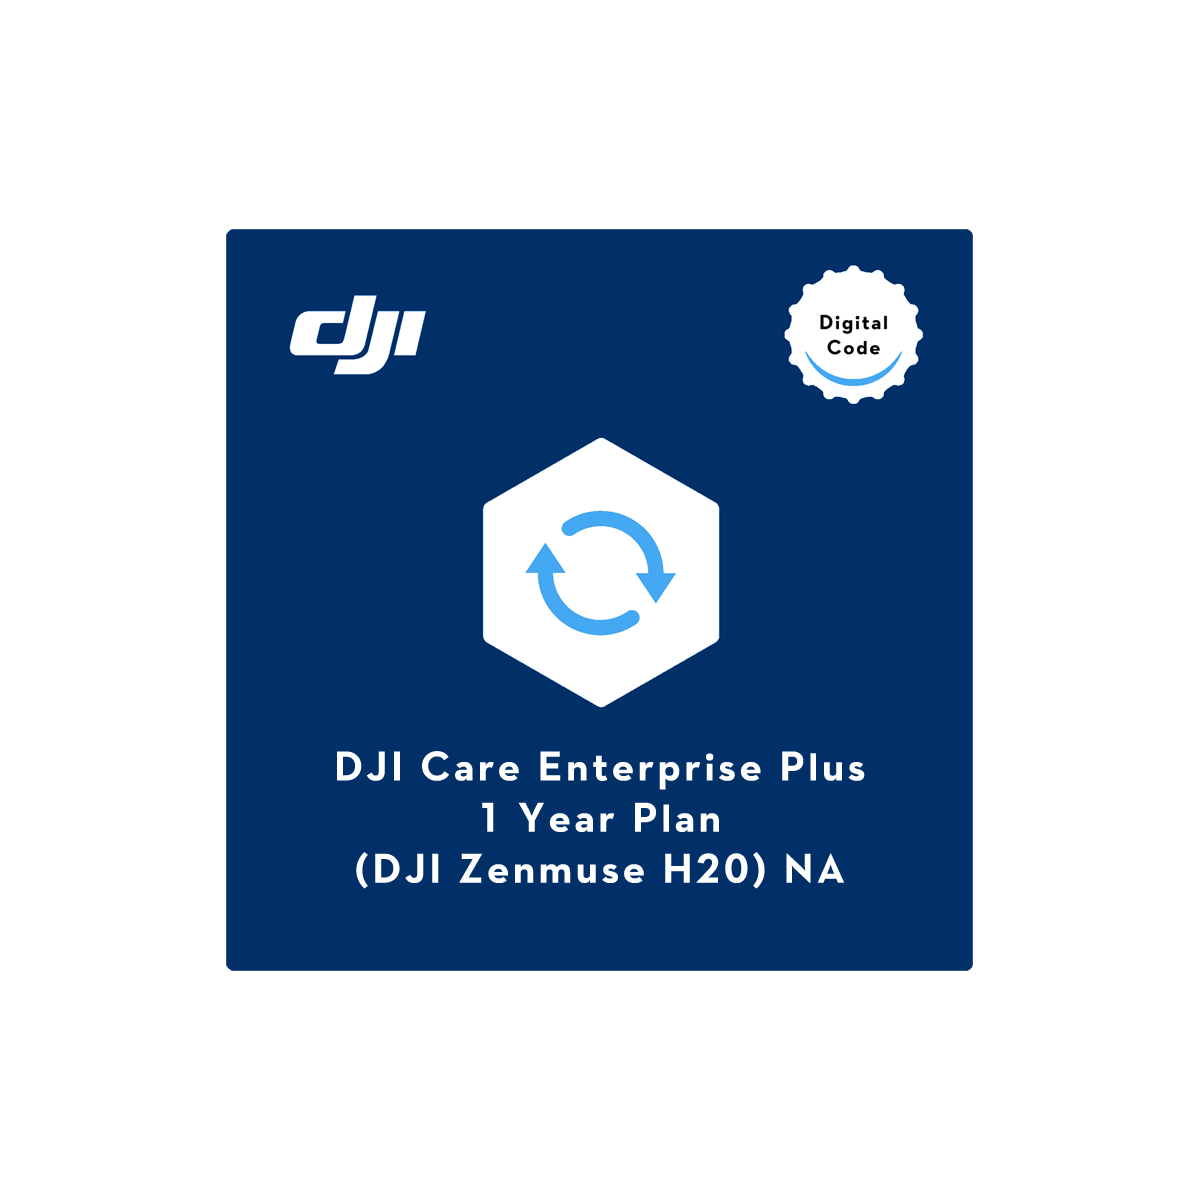 DJI Care Enterprise Plus (H20) NA